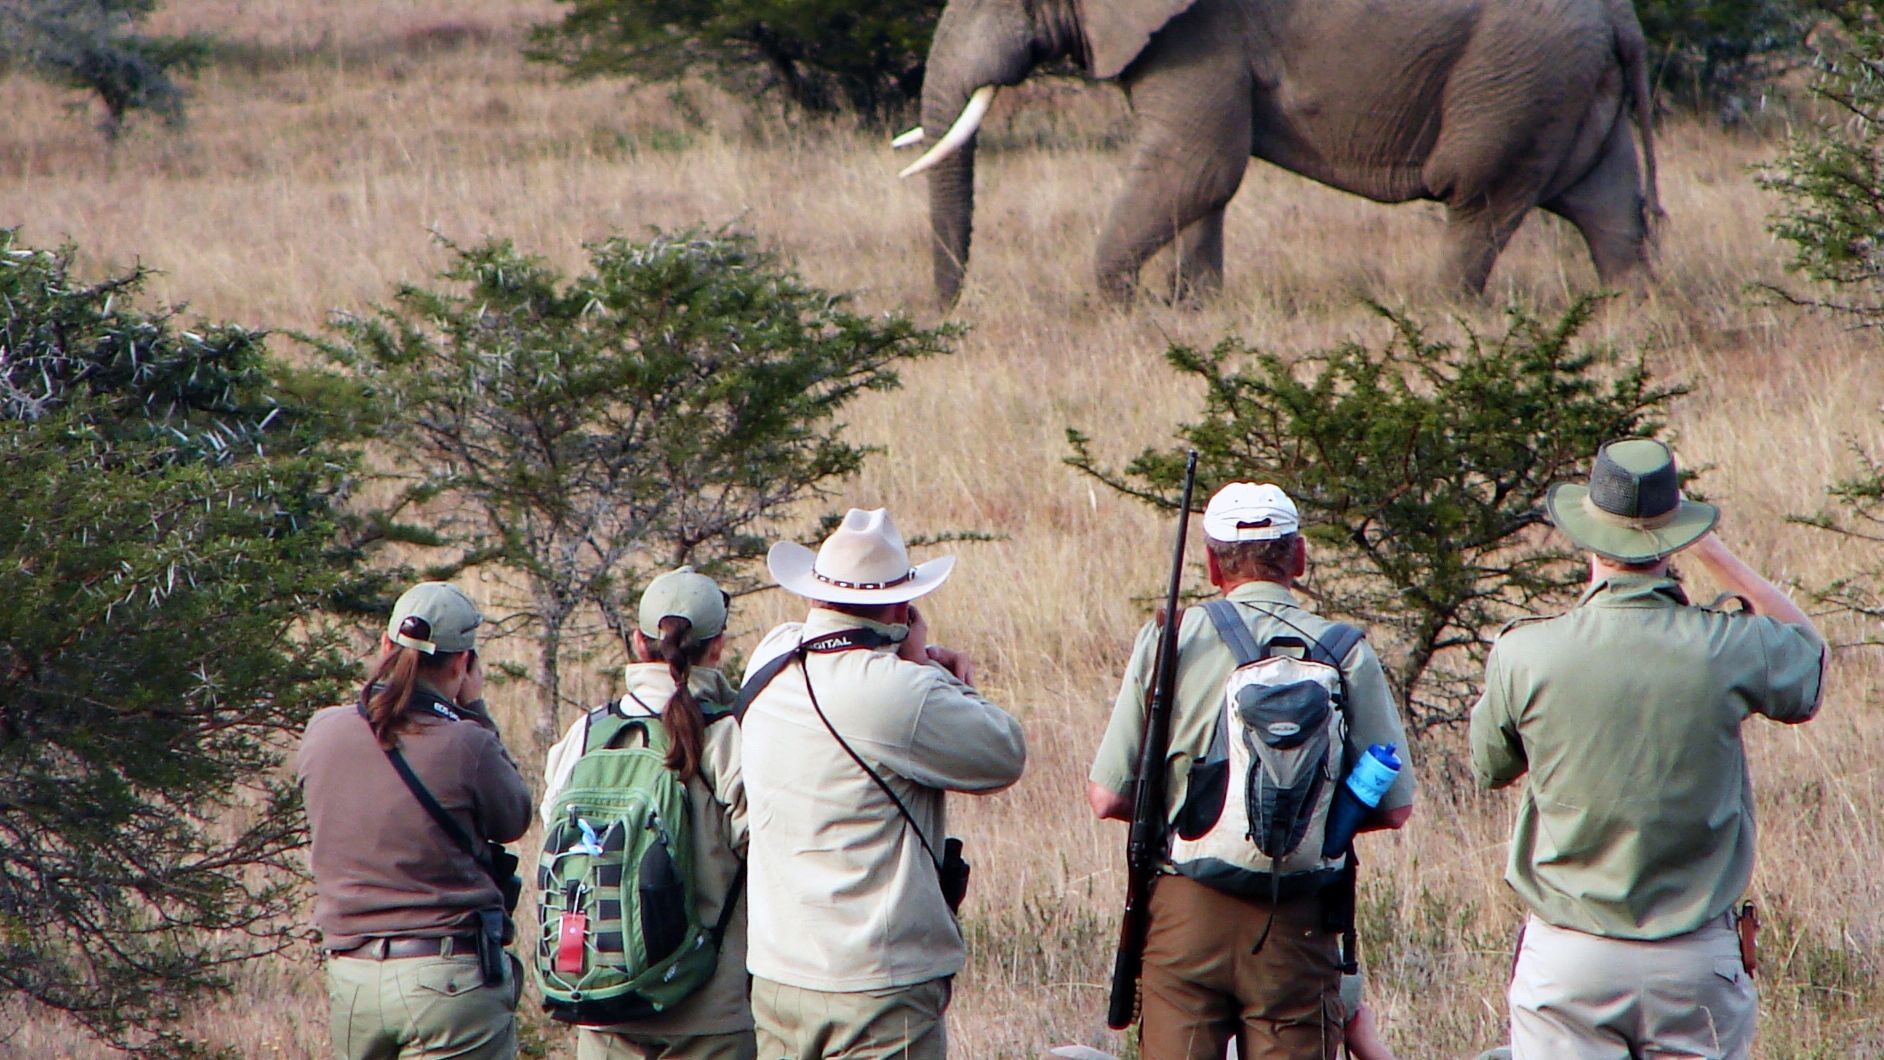 Trails Guide-Studenten auf einem Pirschgang im Amakhala Game Reserve; bei einem Stopp beobachten sie nun einen Elefanten